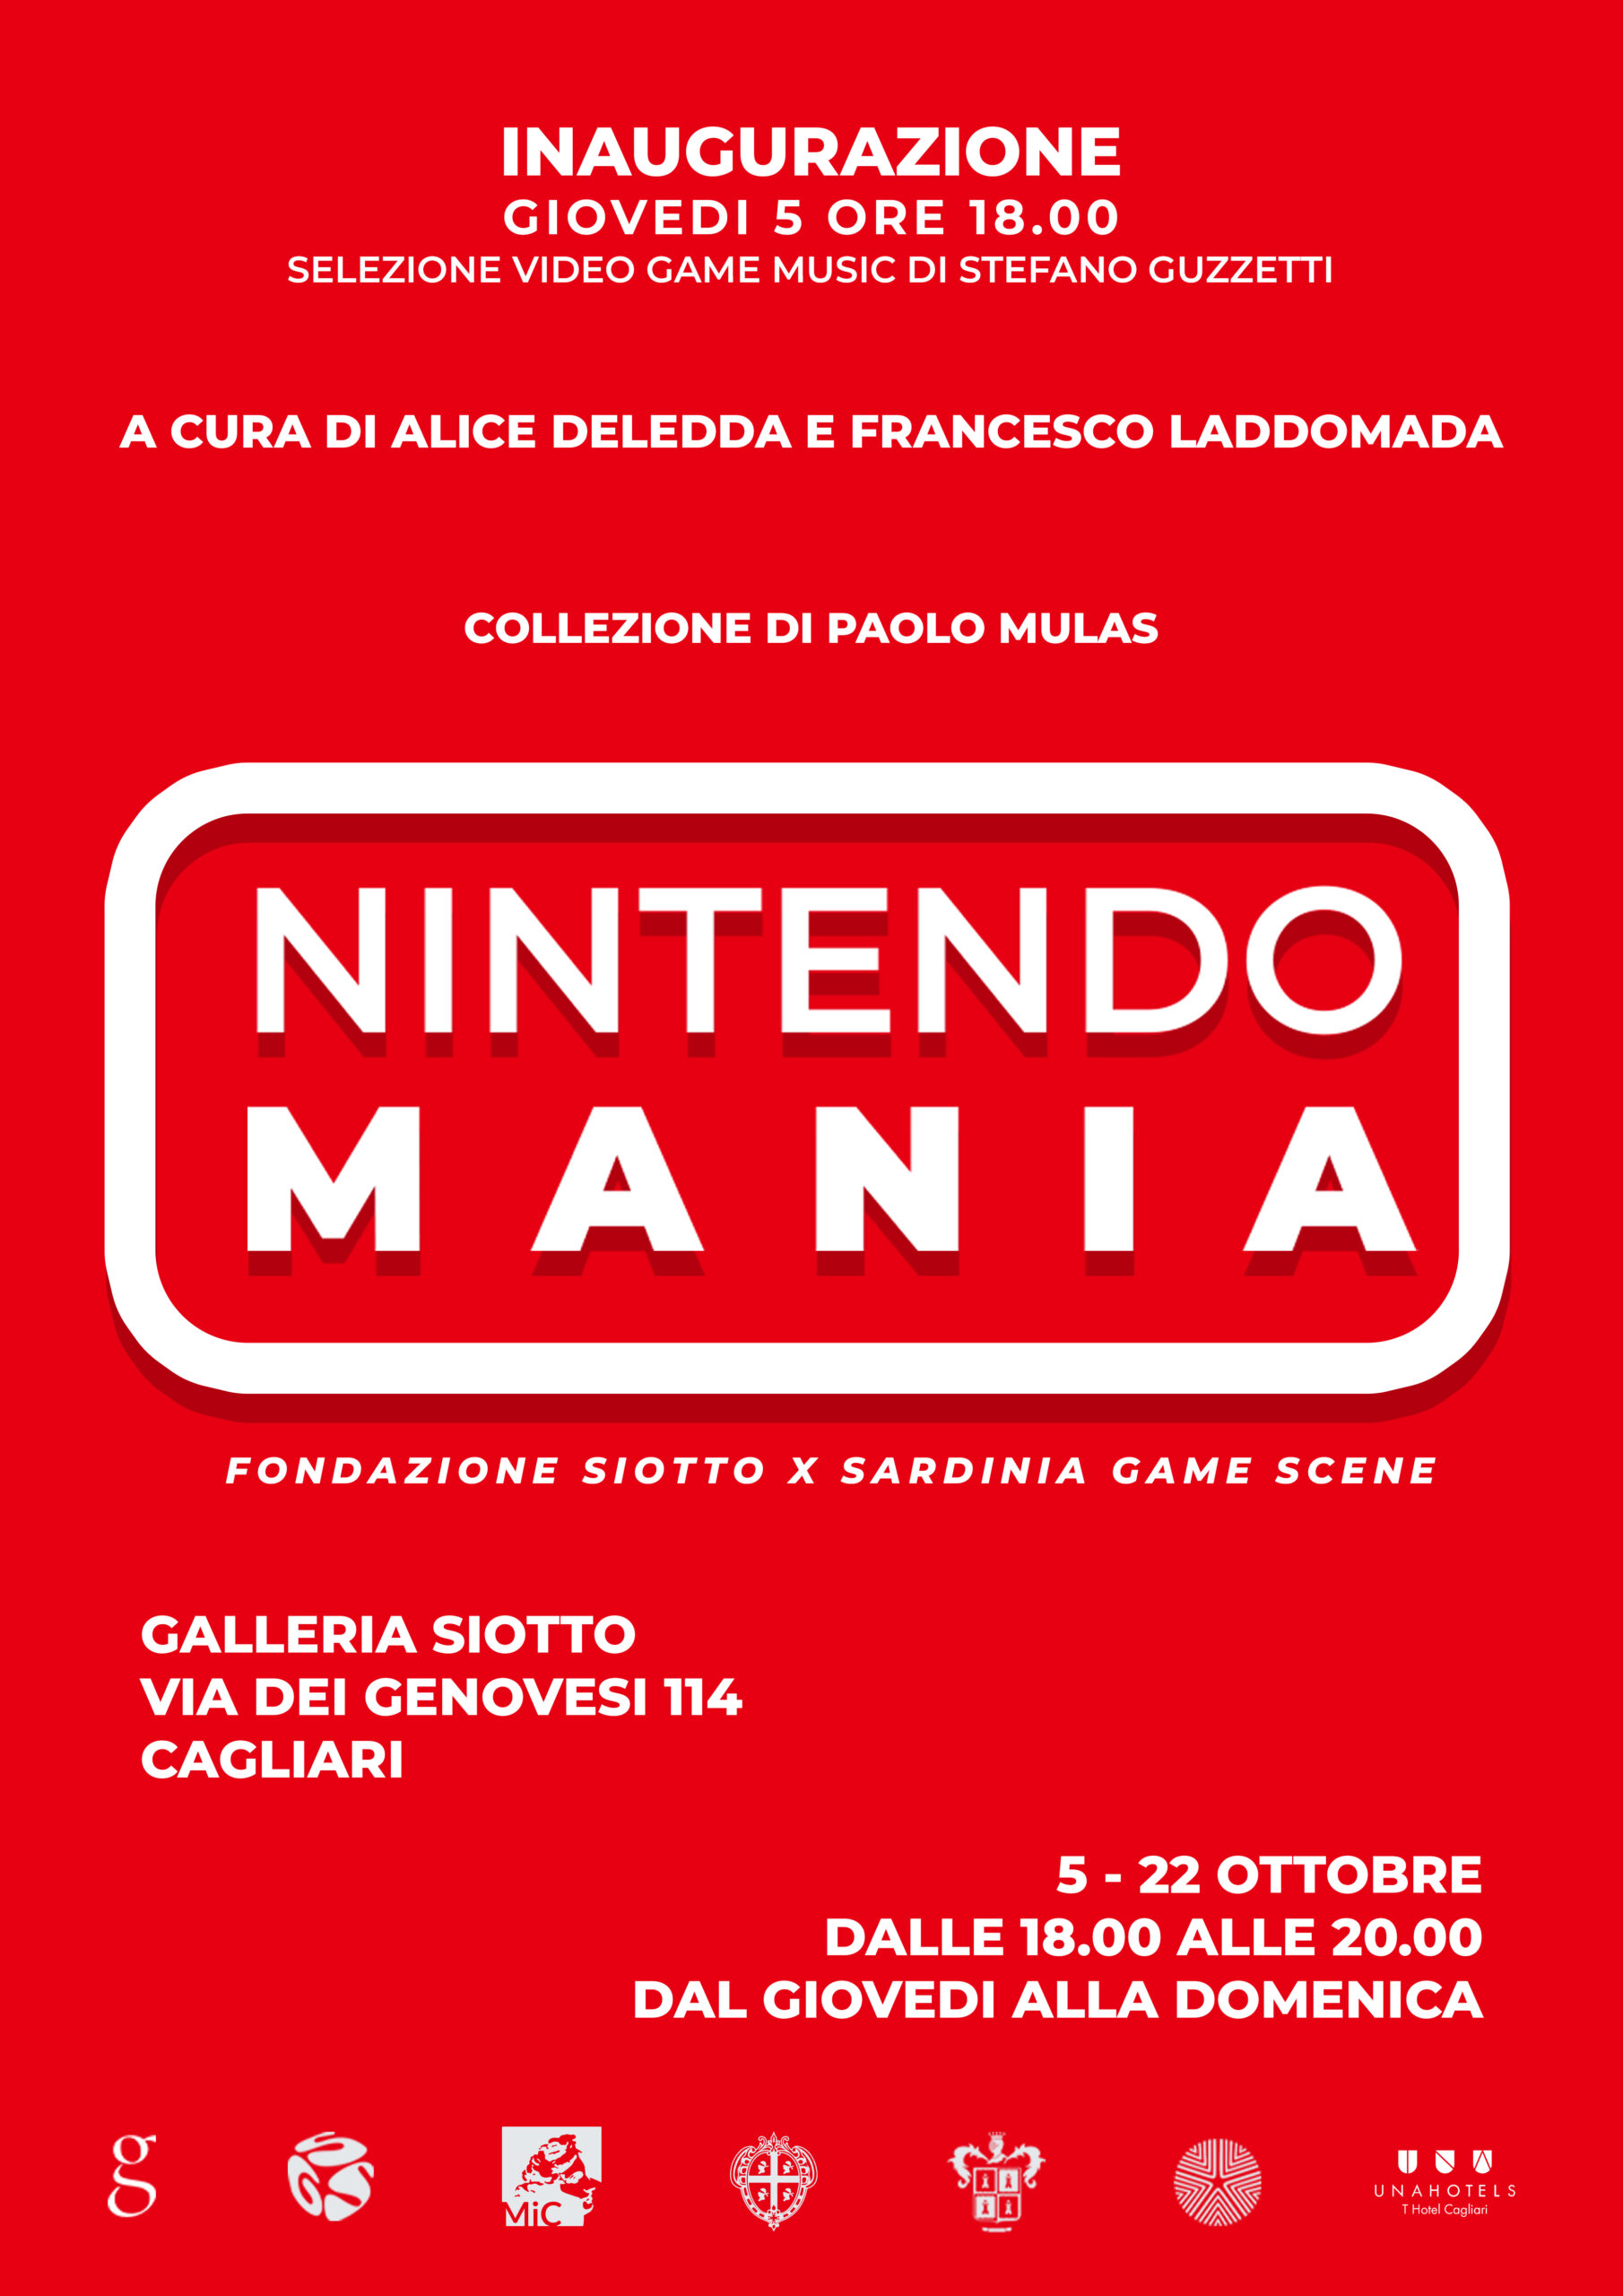 Al momento stai visualizzando Nintendomania – a cura di Alice Deledda e Francesco Laddomada